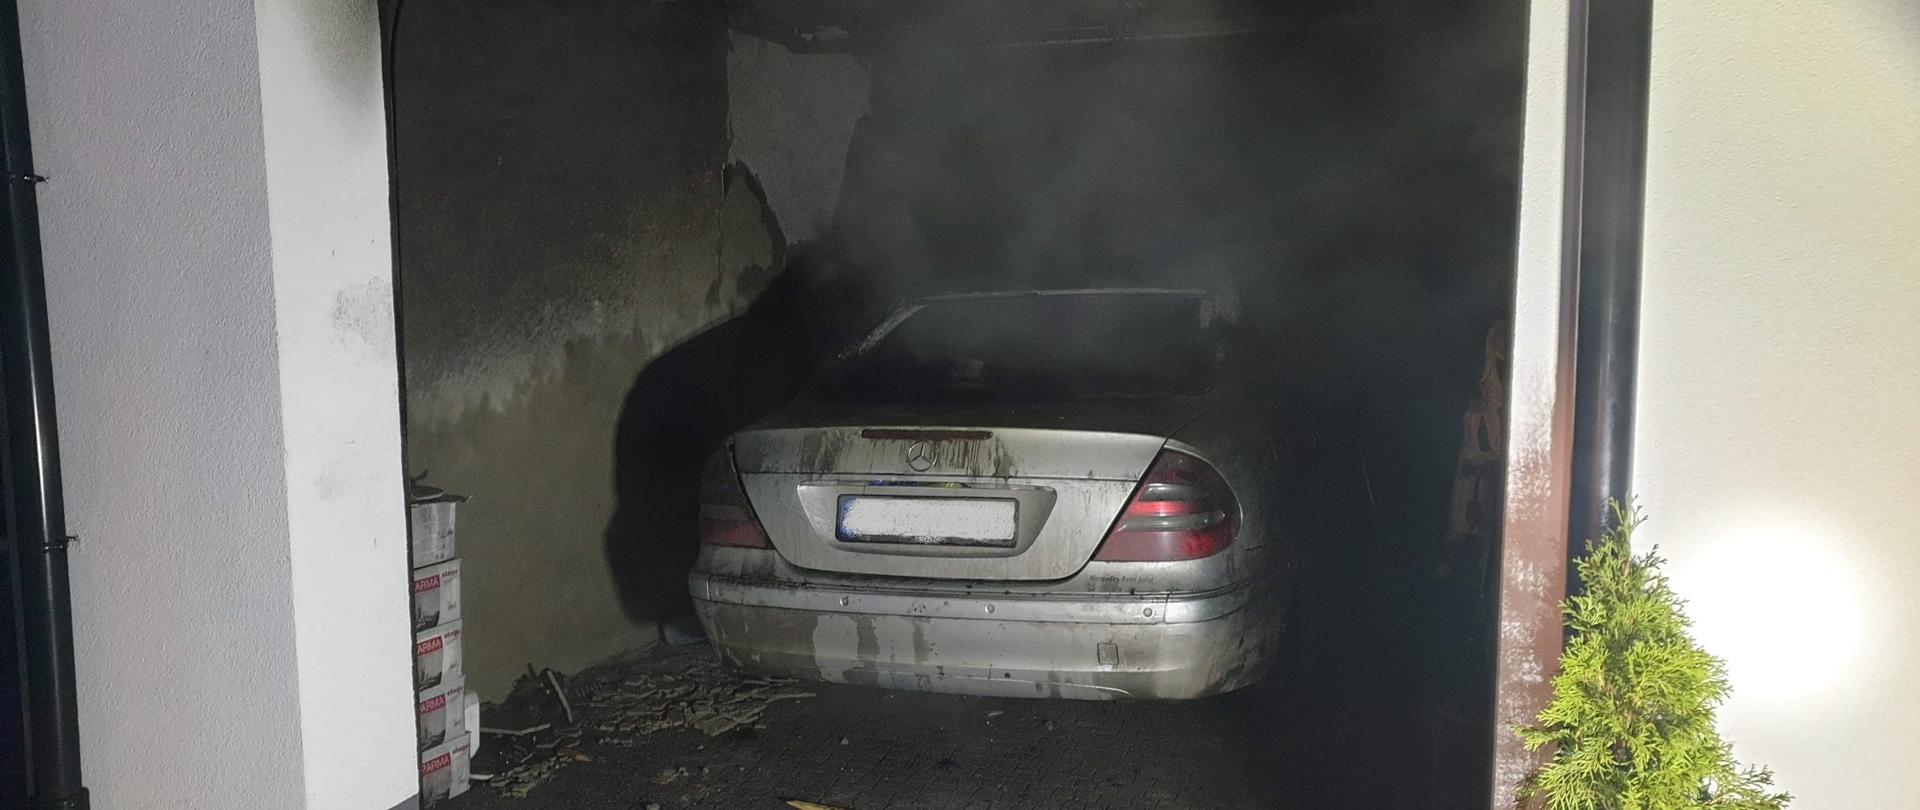 Zdjęcie przedstawia spalony samochód koloru srebrnego, który znajduje się w garażu